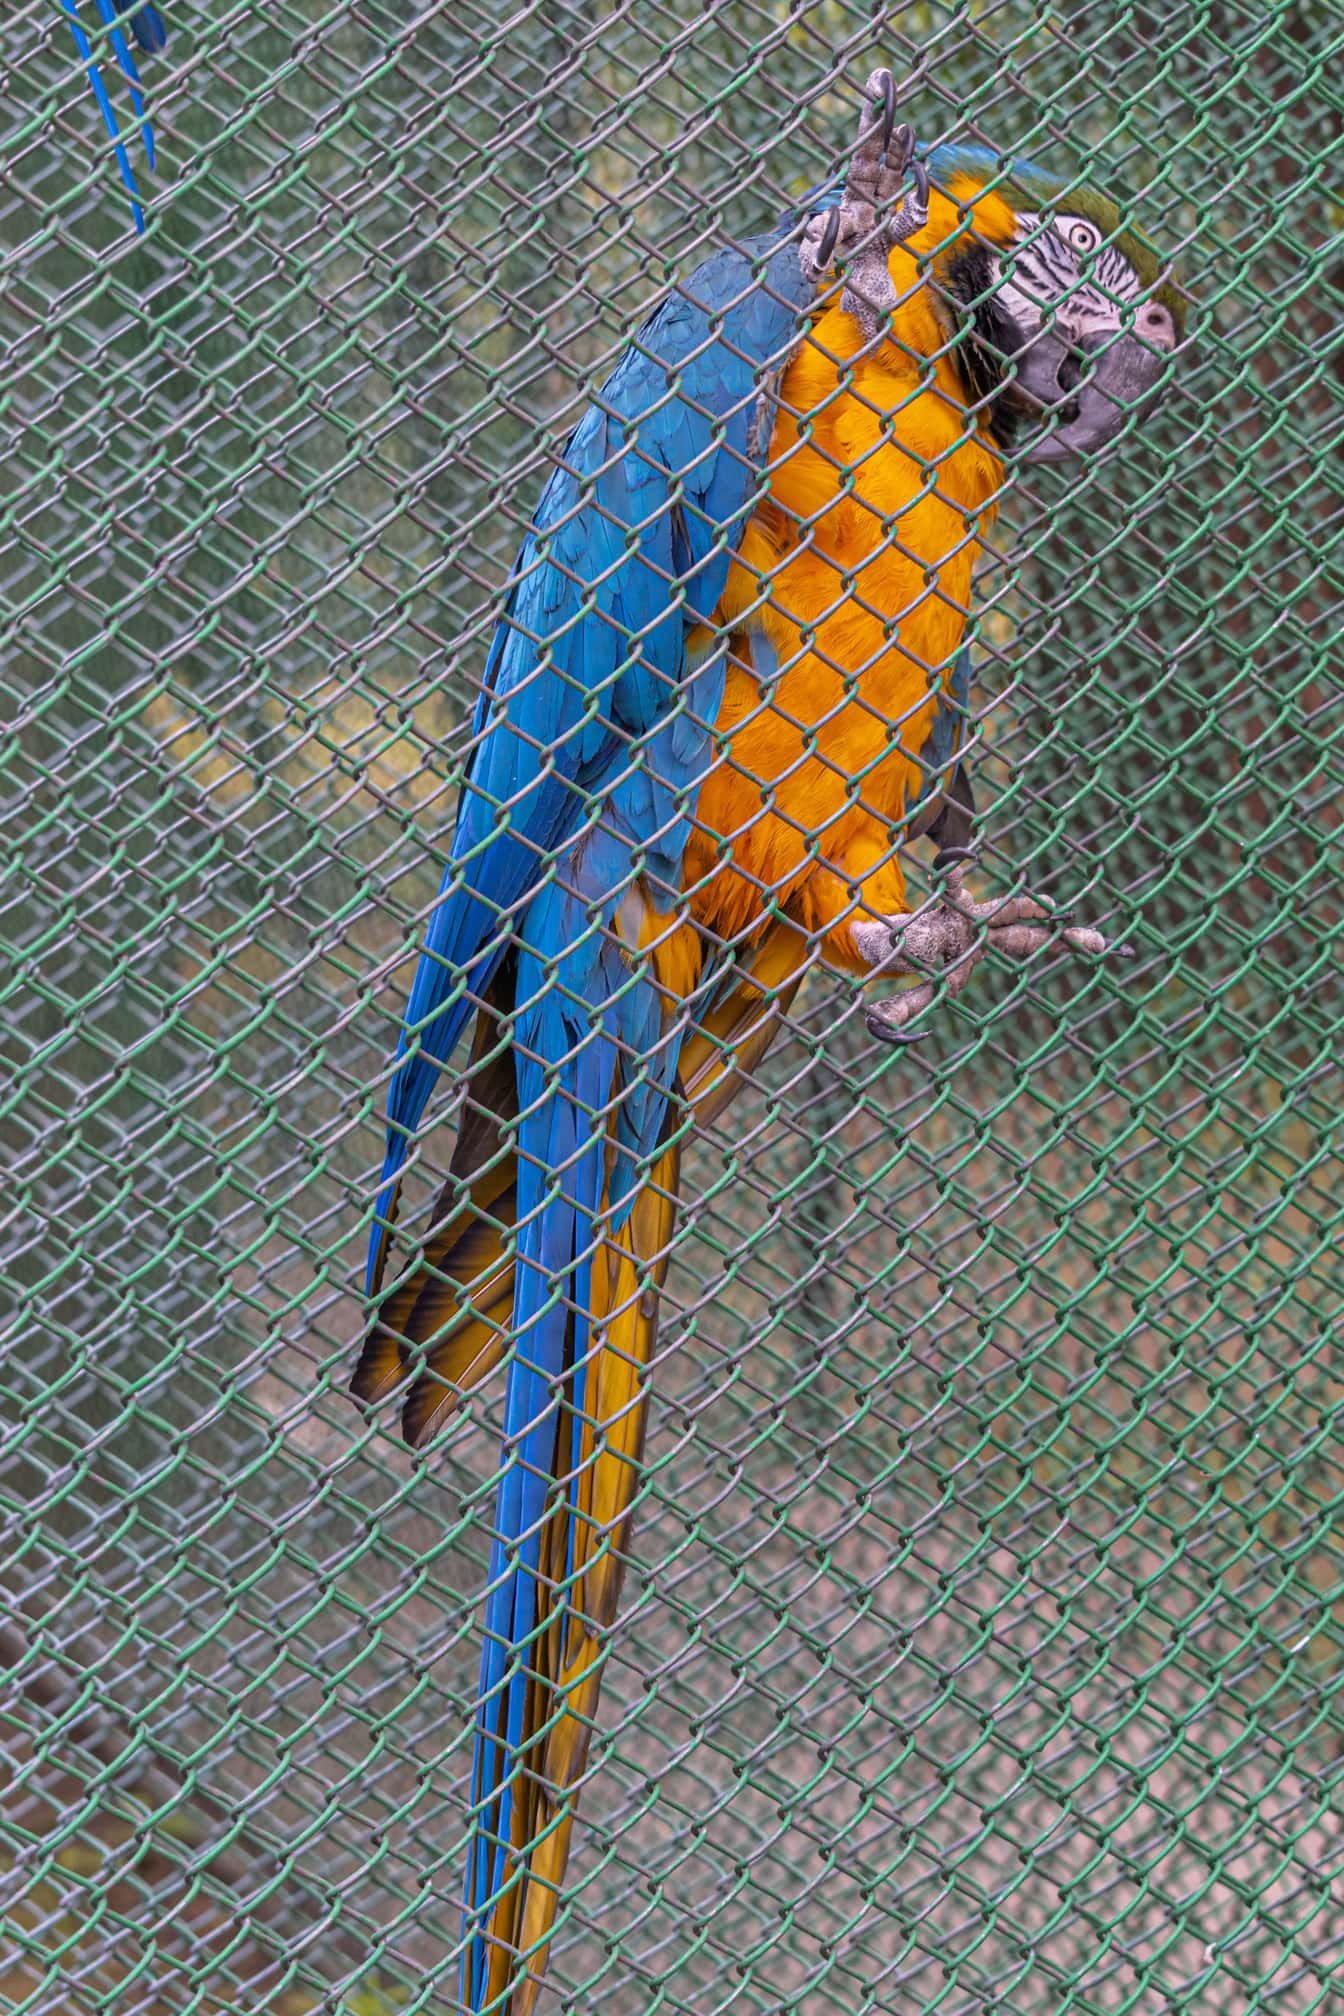 Синьо-златист ара (Ara ararauna) папагал в клетка в зоопарк